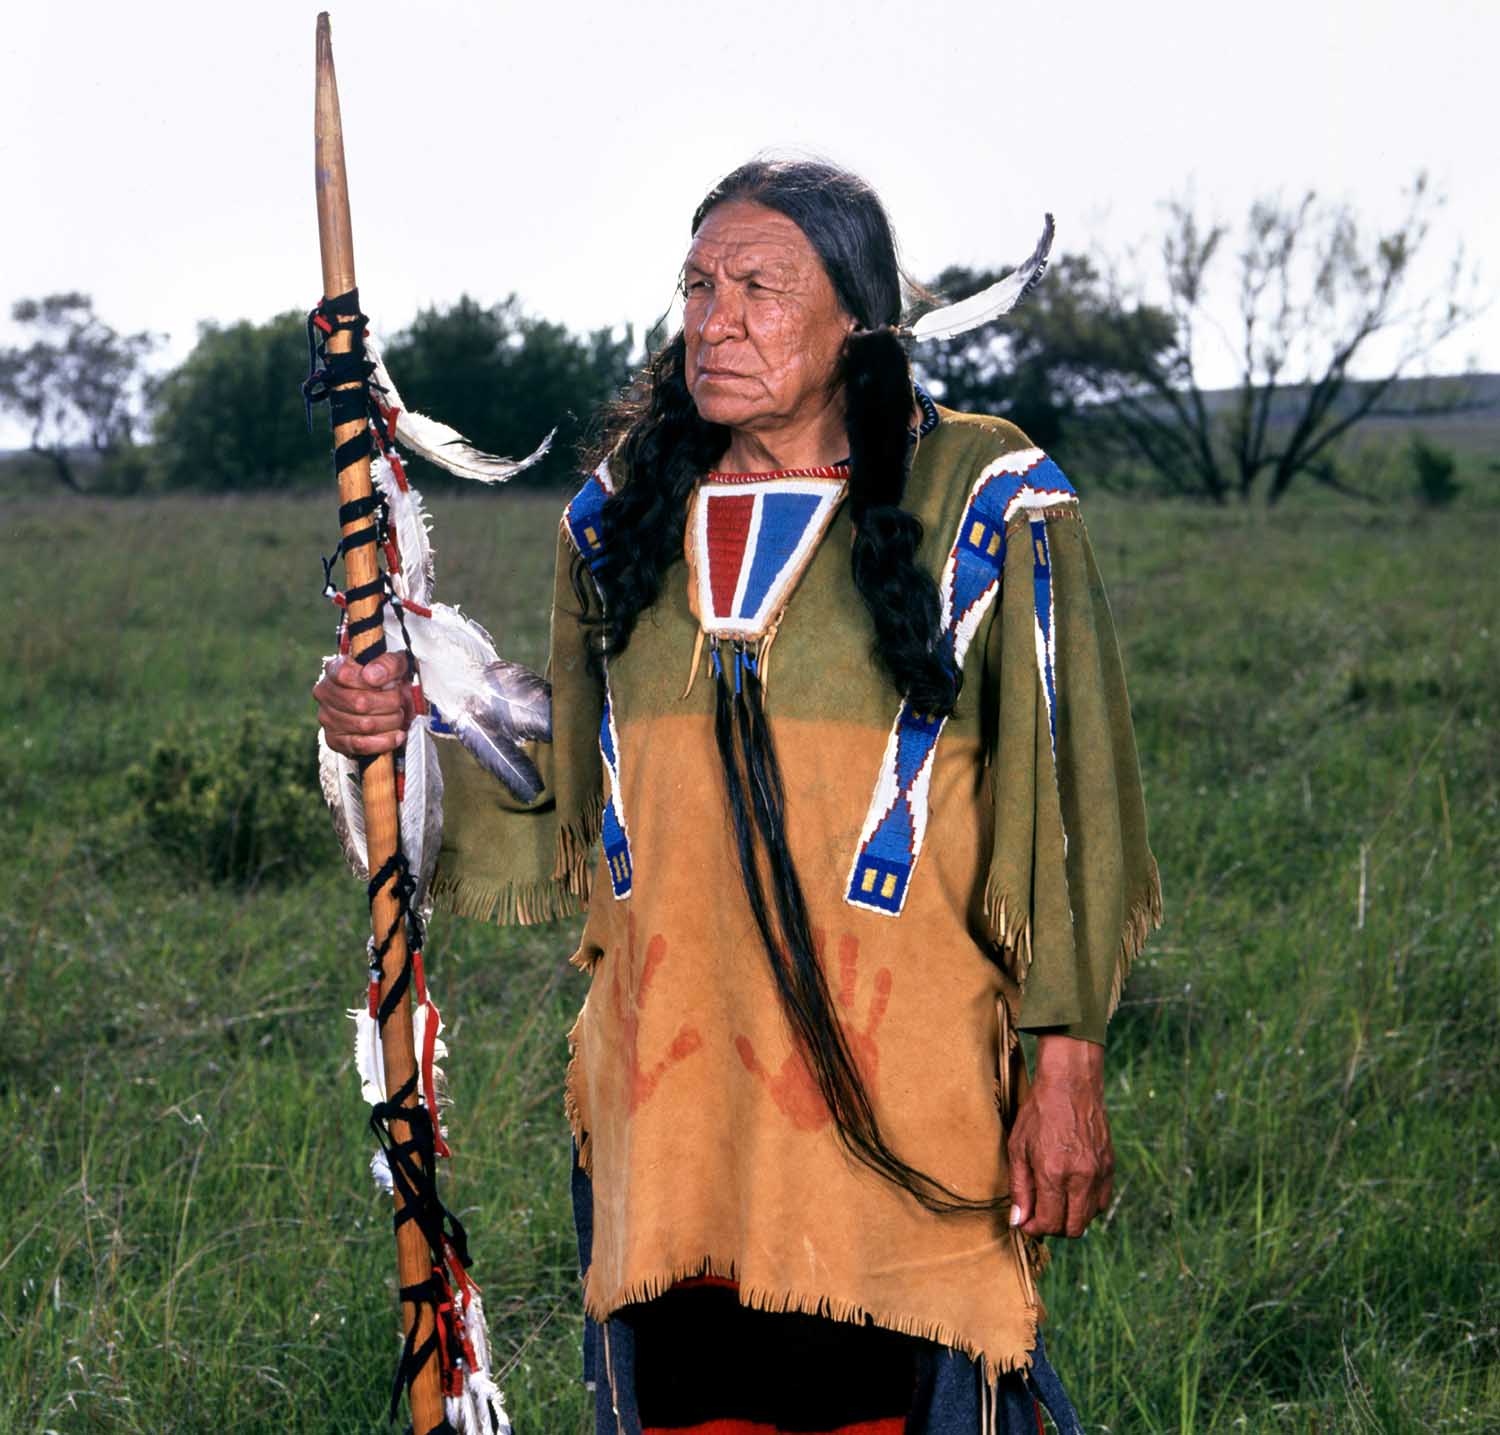 Native American Actor Saginaw Grant Dies at 85